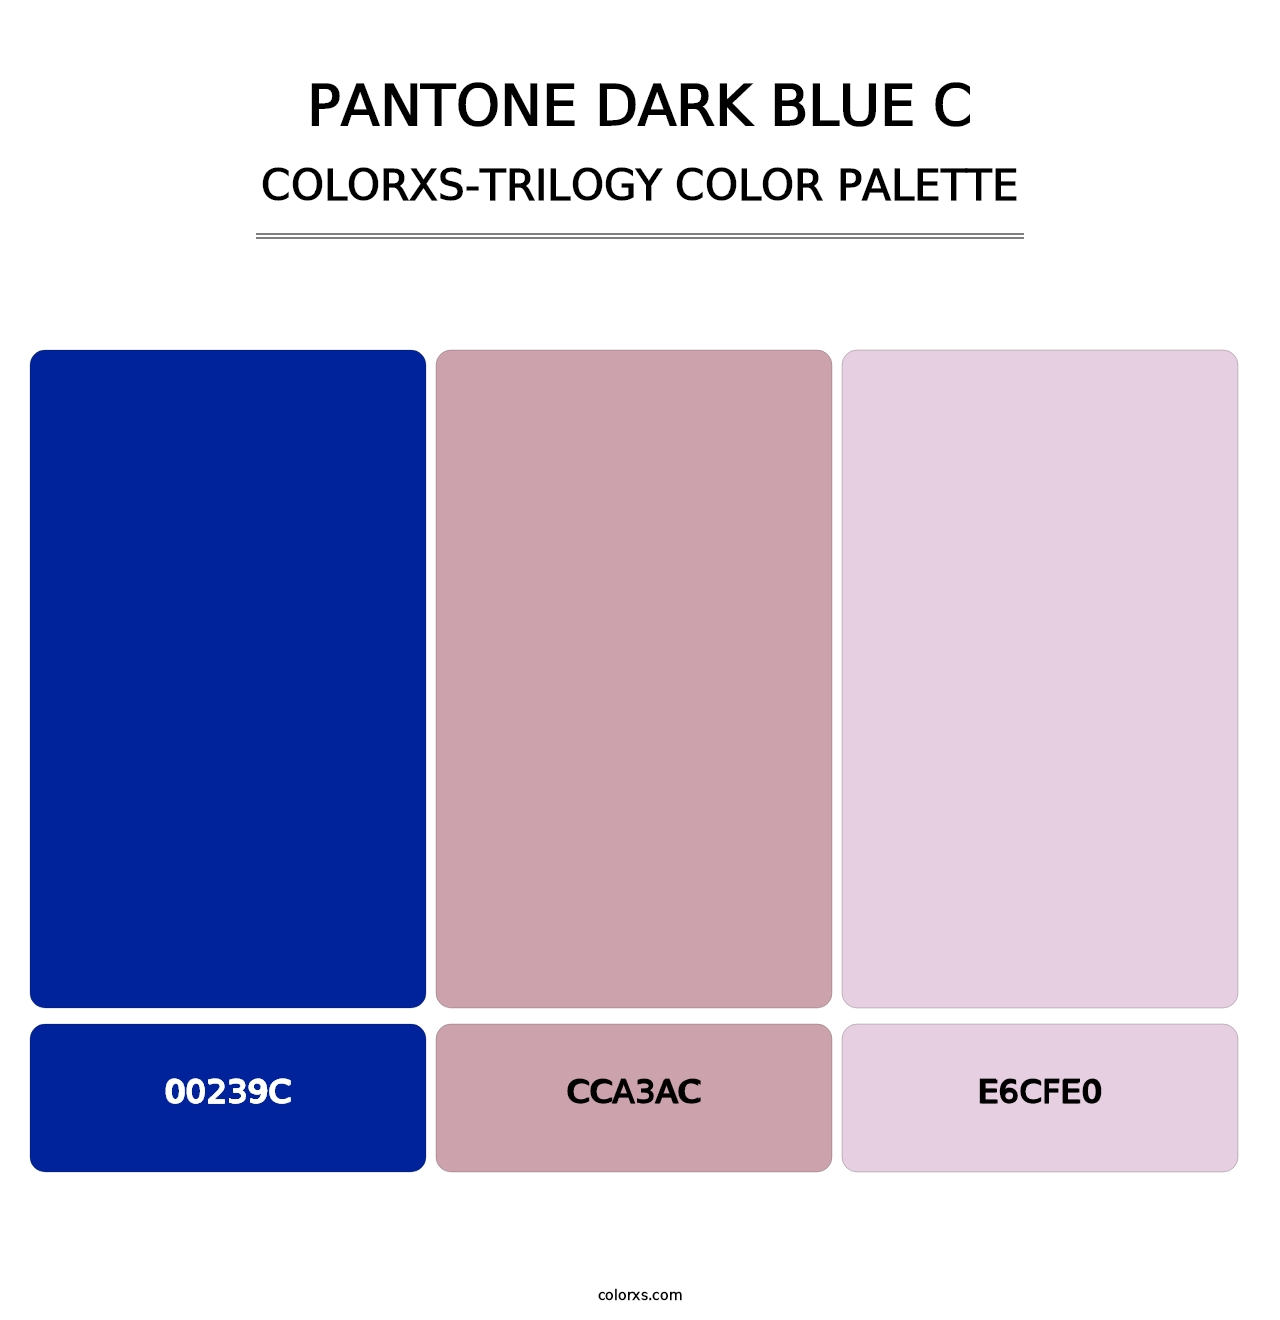 PANTONE Dark Blue C - Colorxs Trilogy Palette